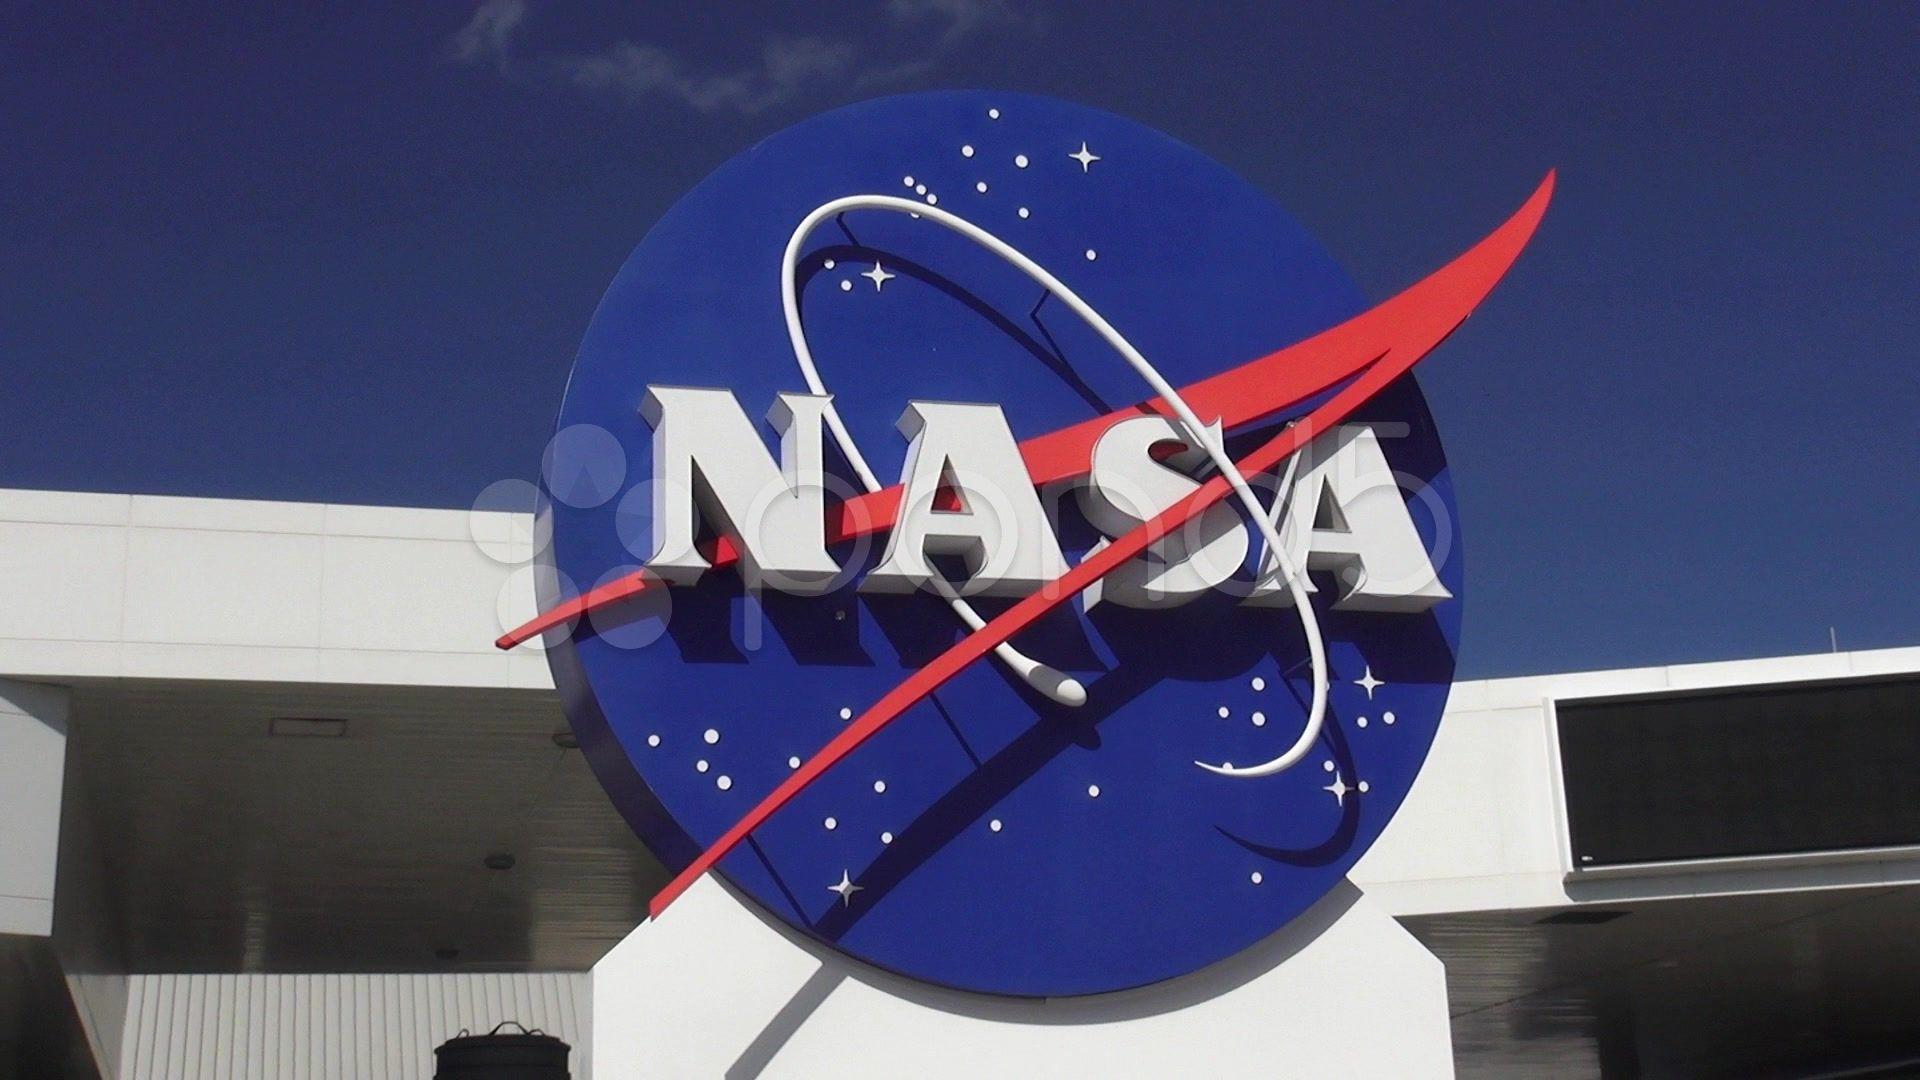 NASA Center Logo - Video: NASA Logo at Kennedy Space Center Cape Canaveral